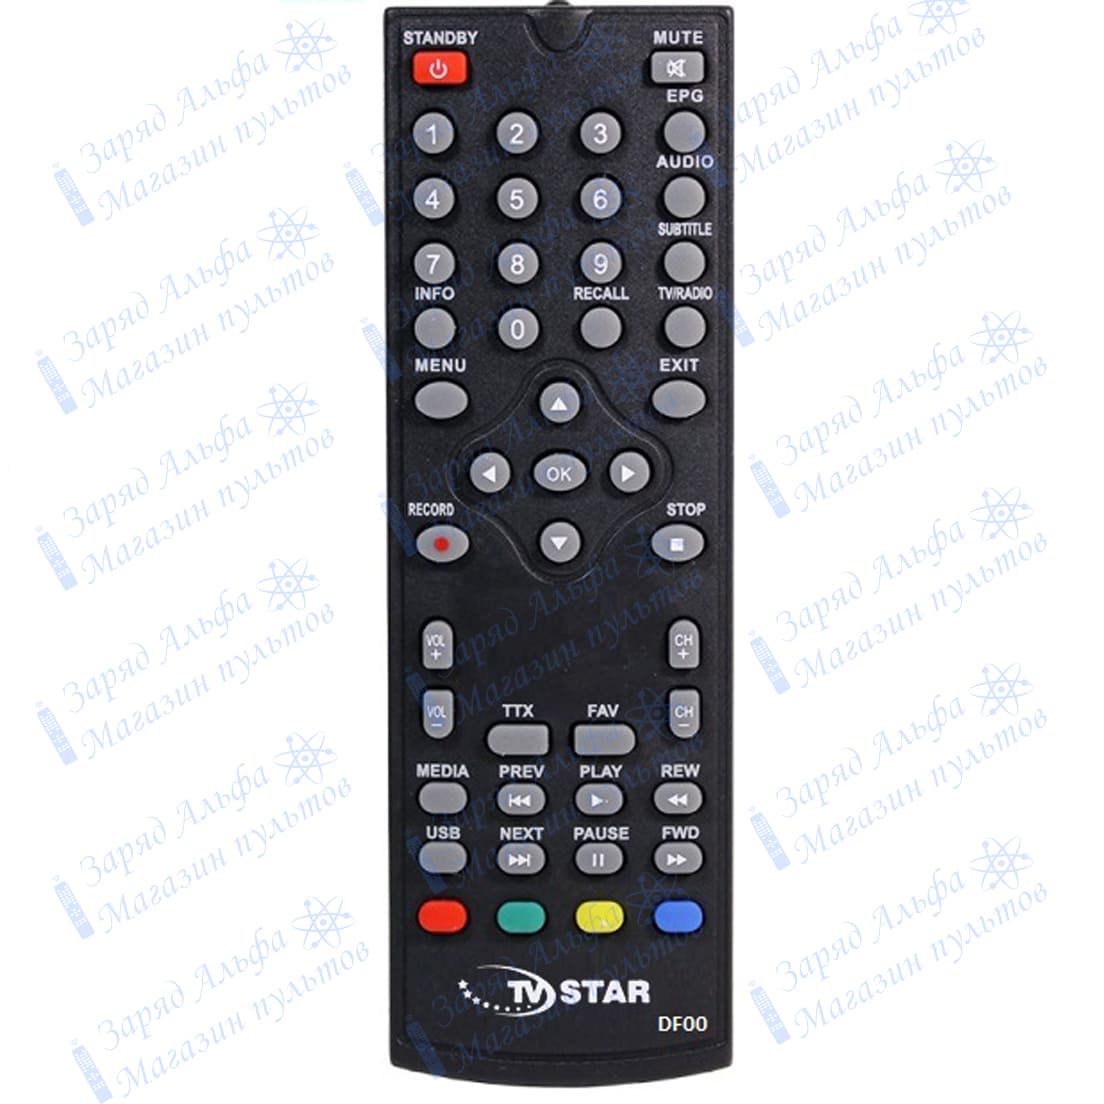 пульт TV STAR DF00 для цифровой приставки MINI 2243 